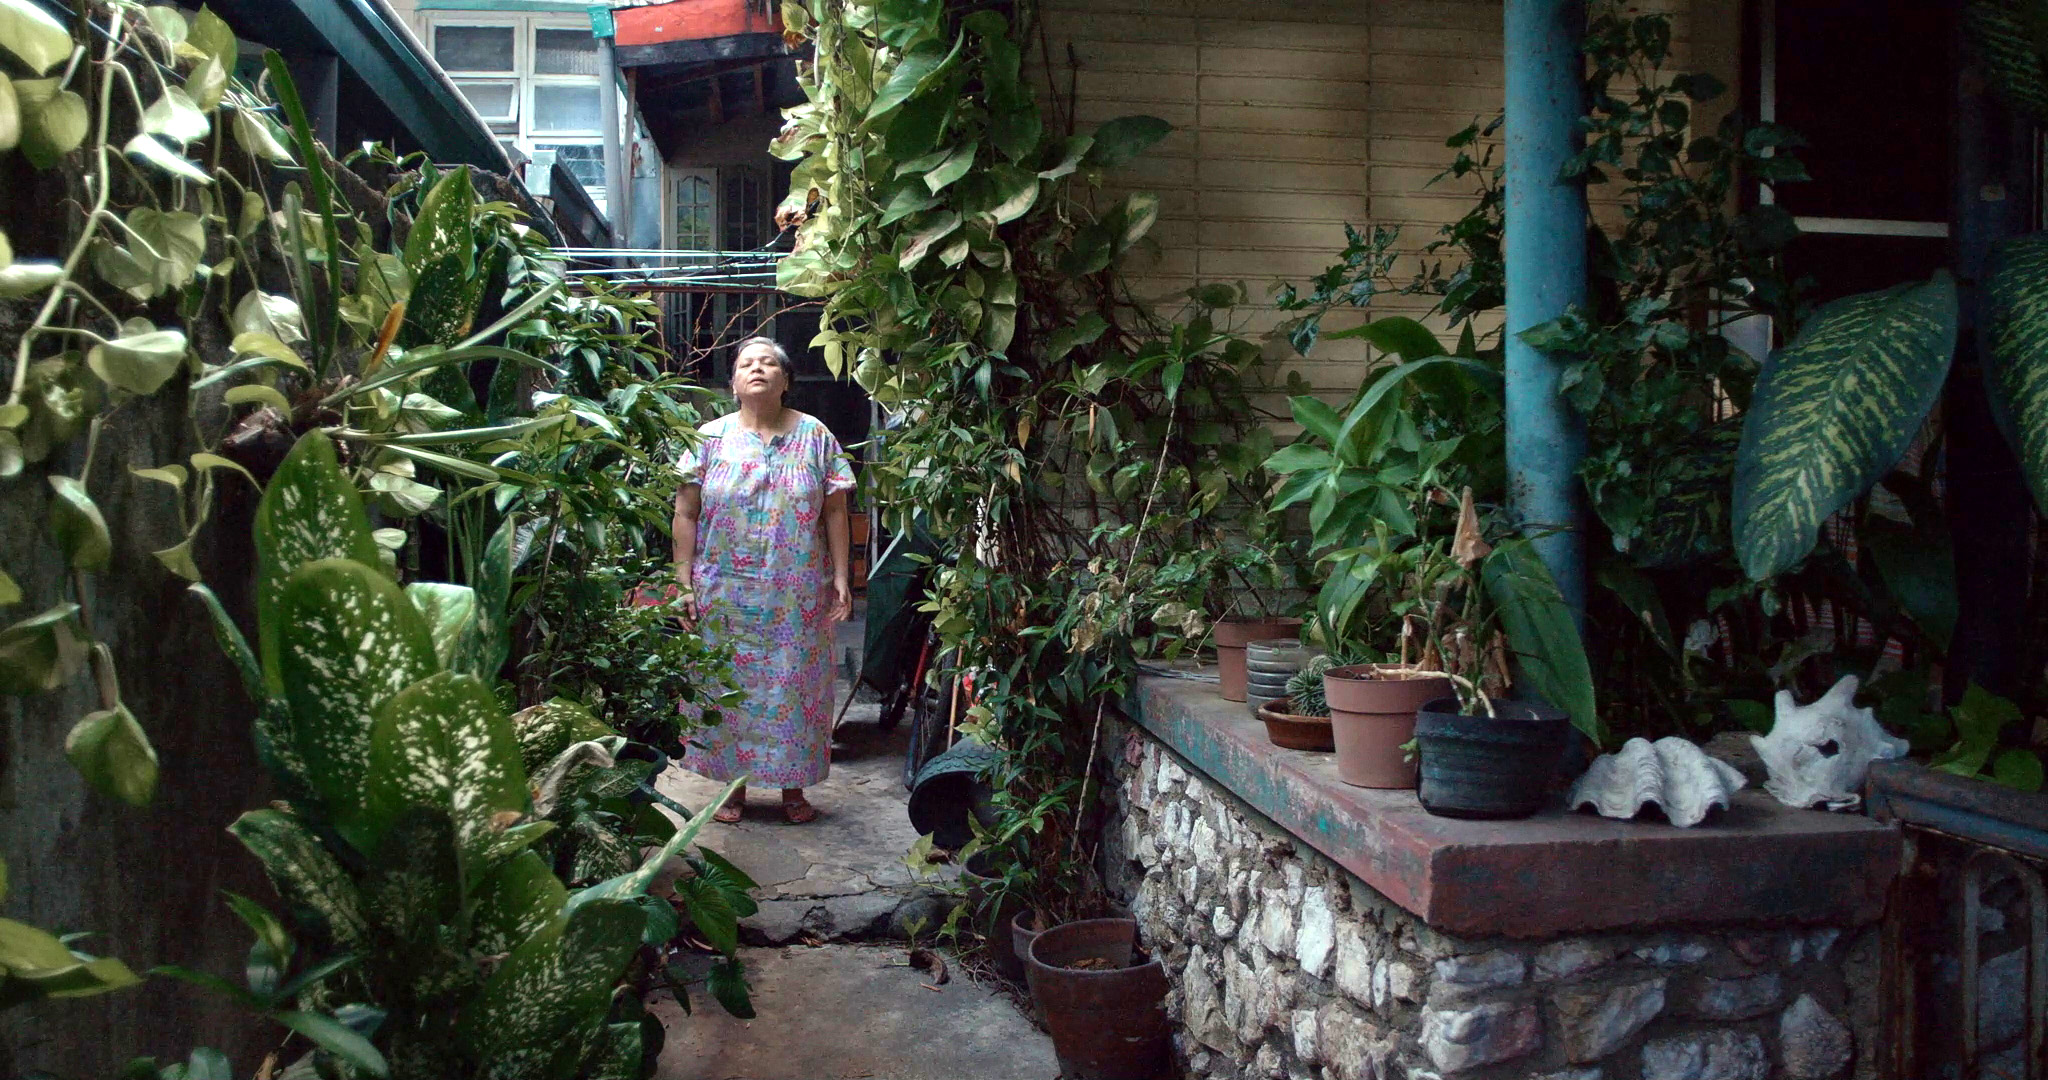 Cena do filme Leonor Jamais Morrerá exibe uma idosa filipina parada em meio ao jardim de sua casa. Ela olha para cima, com os olhos fechados e a luz do sol batendo em seu rosto. Ela usa um vestido colorido. À esquerda, vemos uma cerca-viva repleta de plantas e à direita vemos mais plantas na parede da cada, com alguns vasos em cima de um balcão perto do canto inferior direito da imagem. 